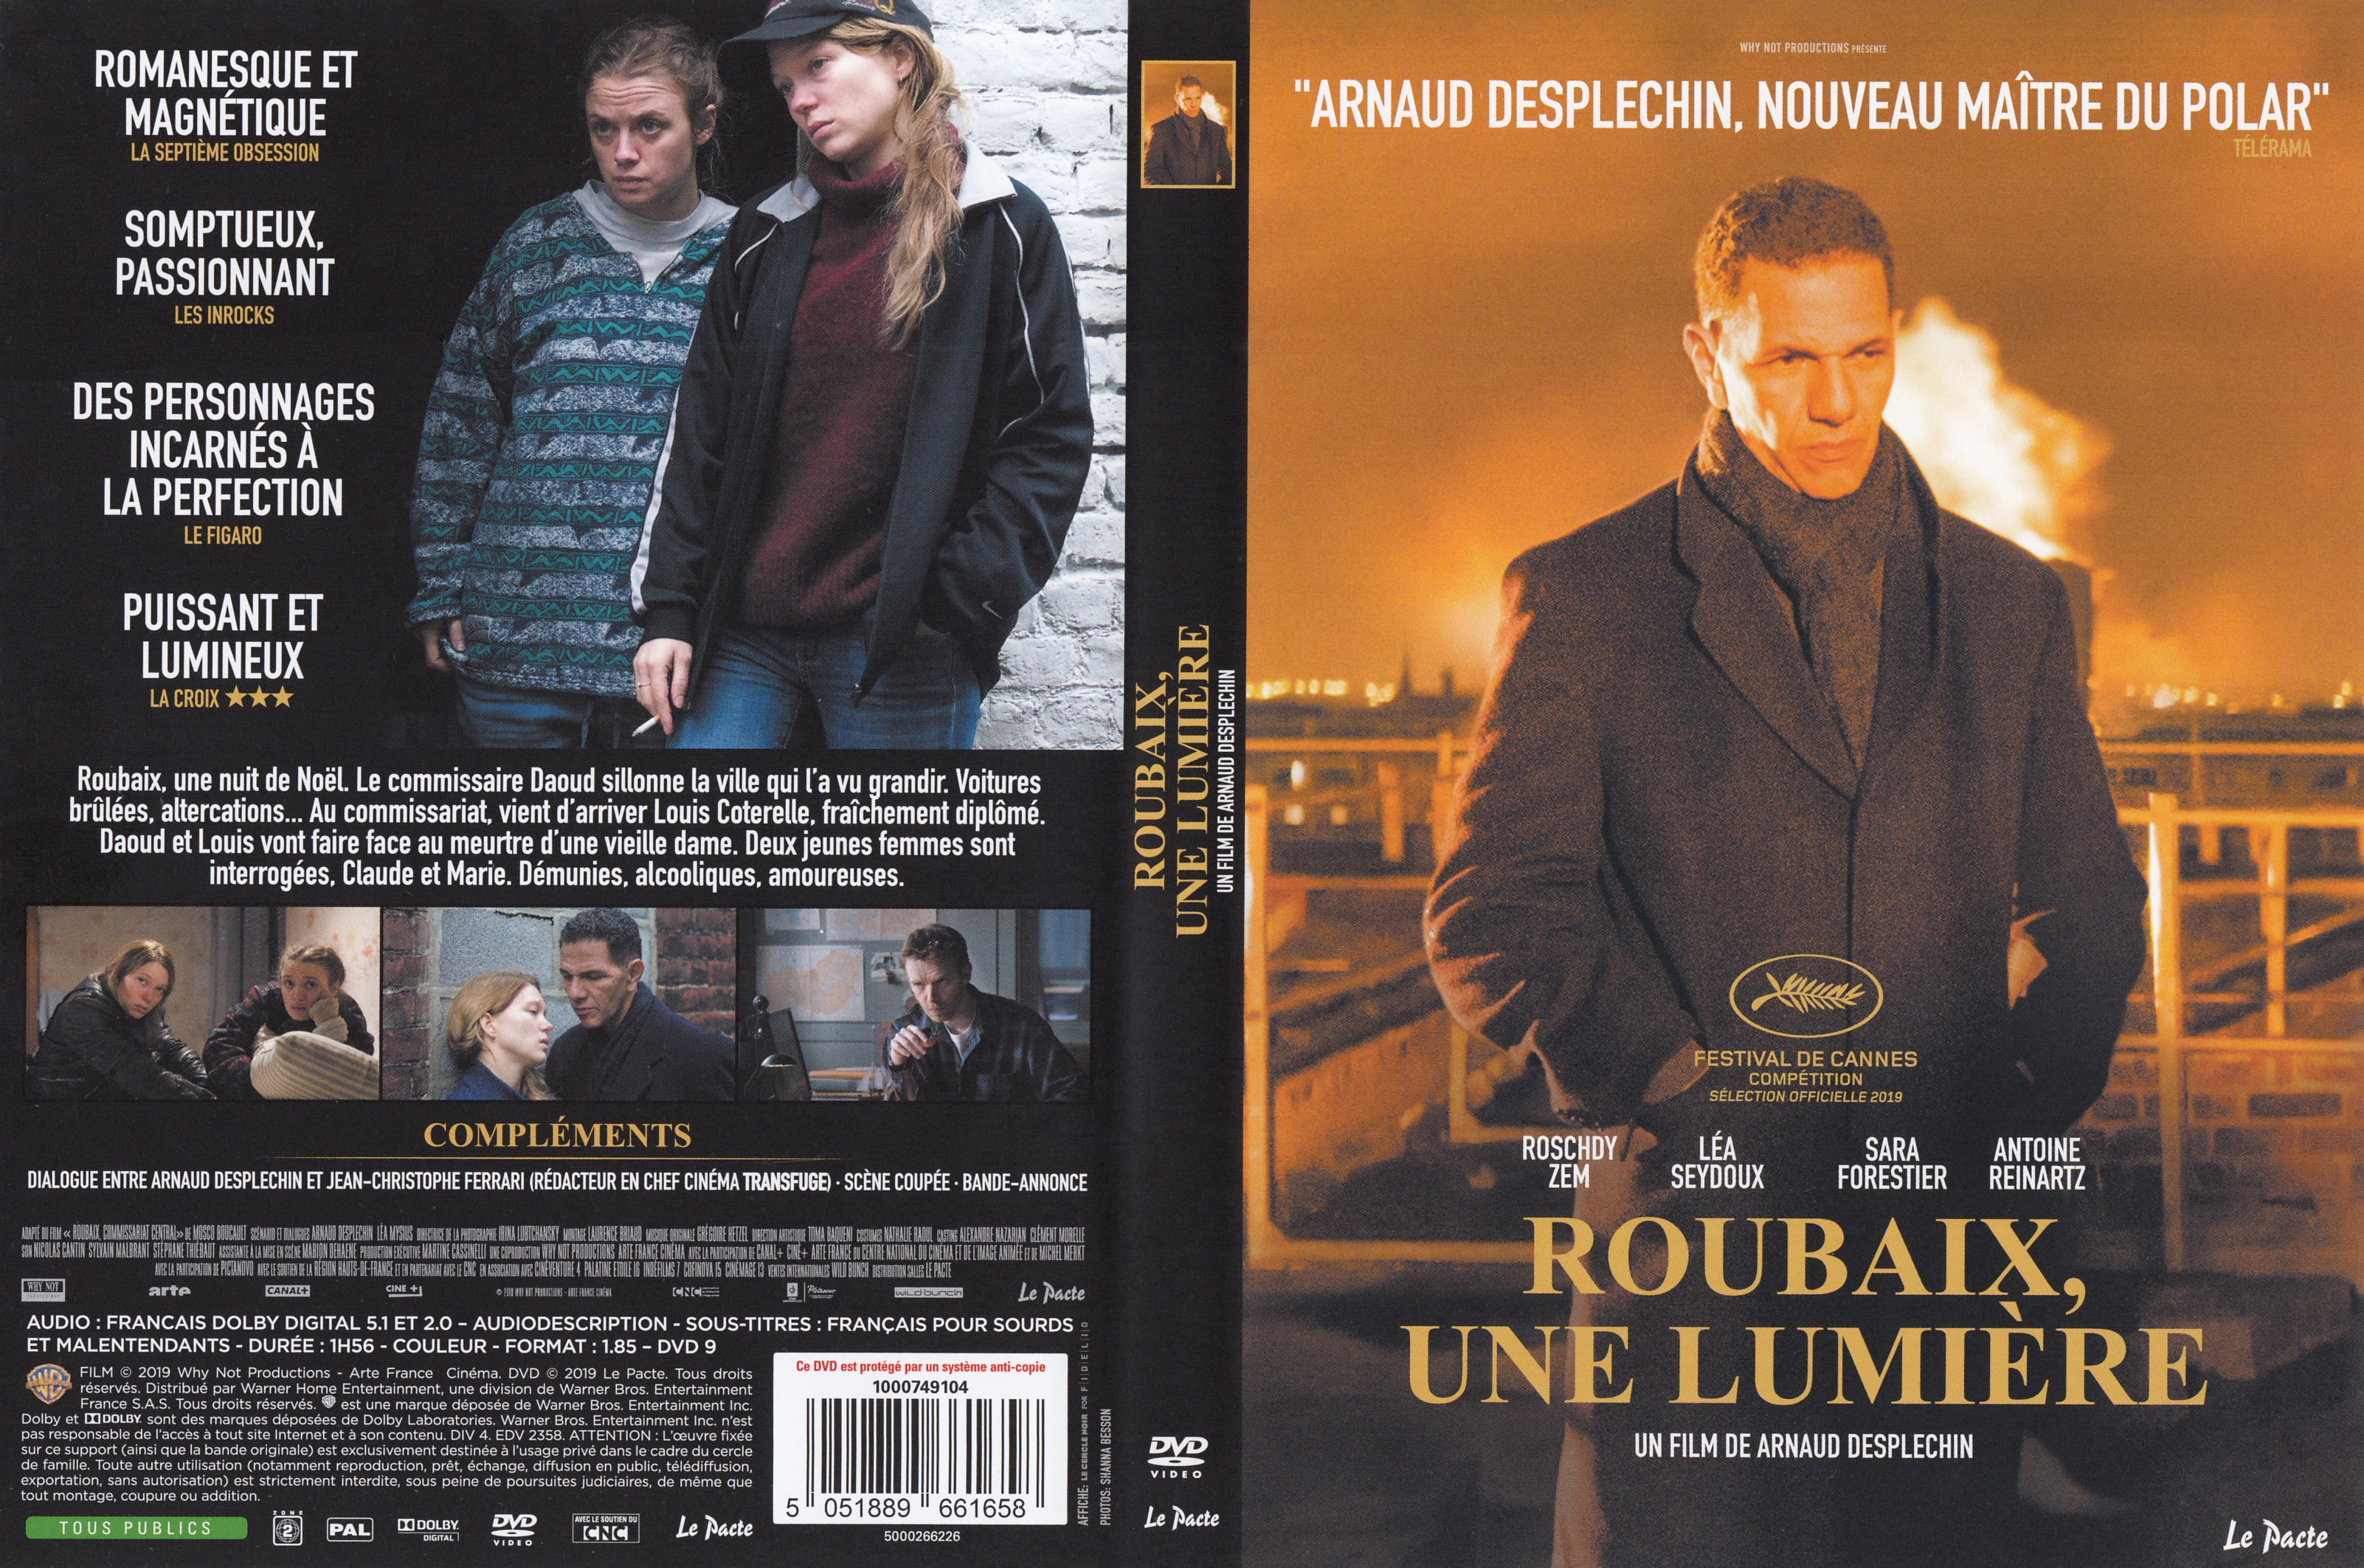 Jaquette DVD Roubaix, une lumire